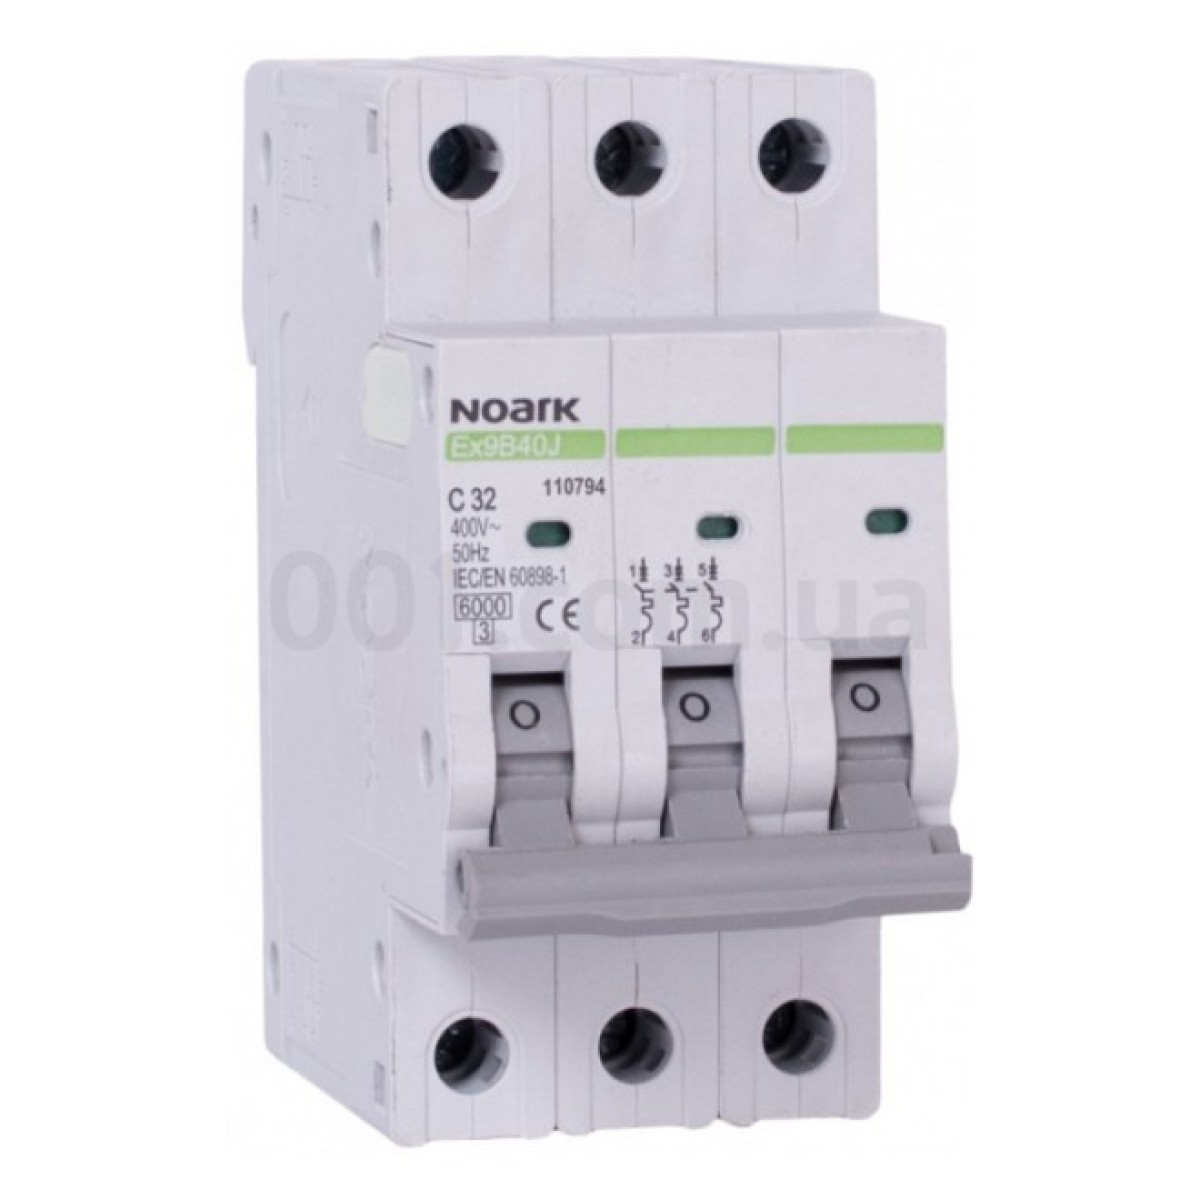 Модульний автоматичний вимикач Ex9B40J 6kA хар-ка С 4A 40,5мм 3P, NOARK 256_256.jpg